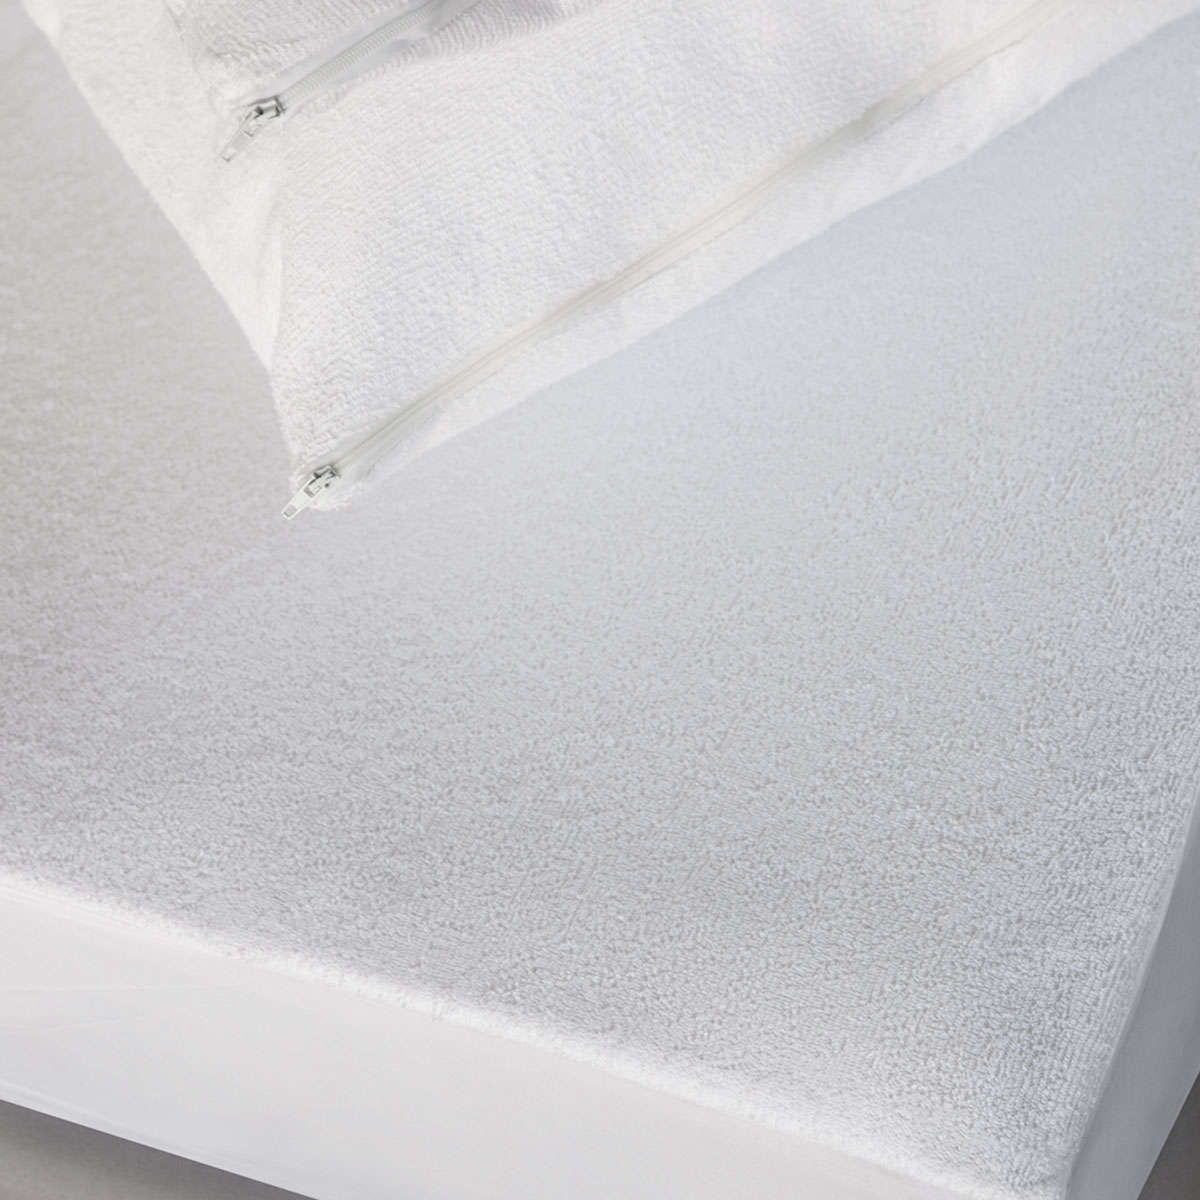 Αδιάβροχο προστατευτικό στρώματος κούνιας με περιμετρική υφασμάτινη φούστα white melinen